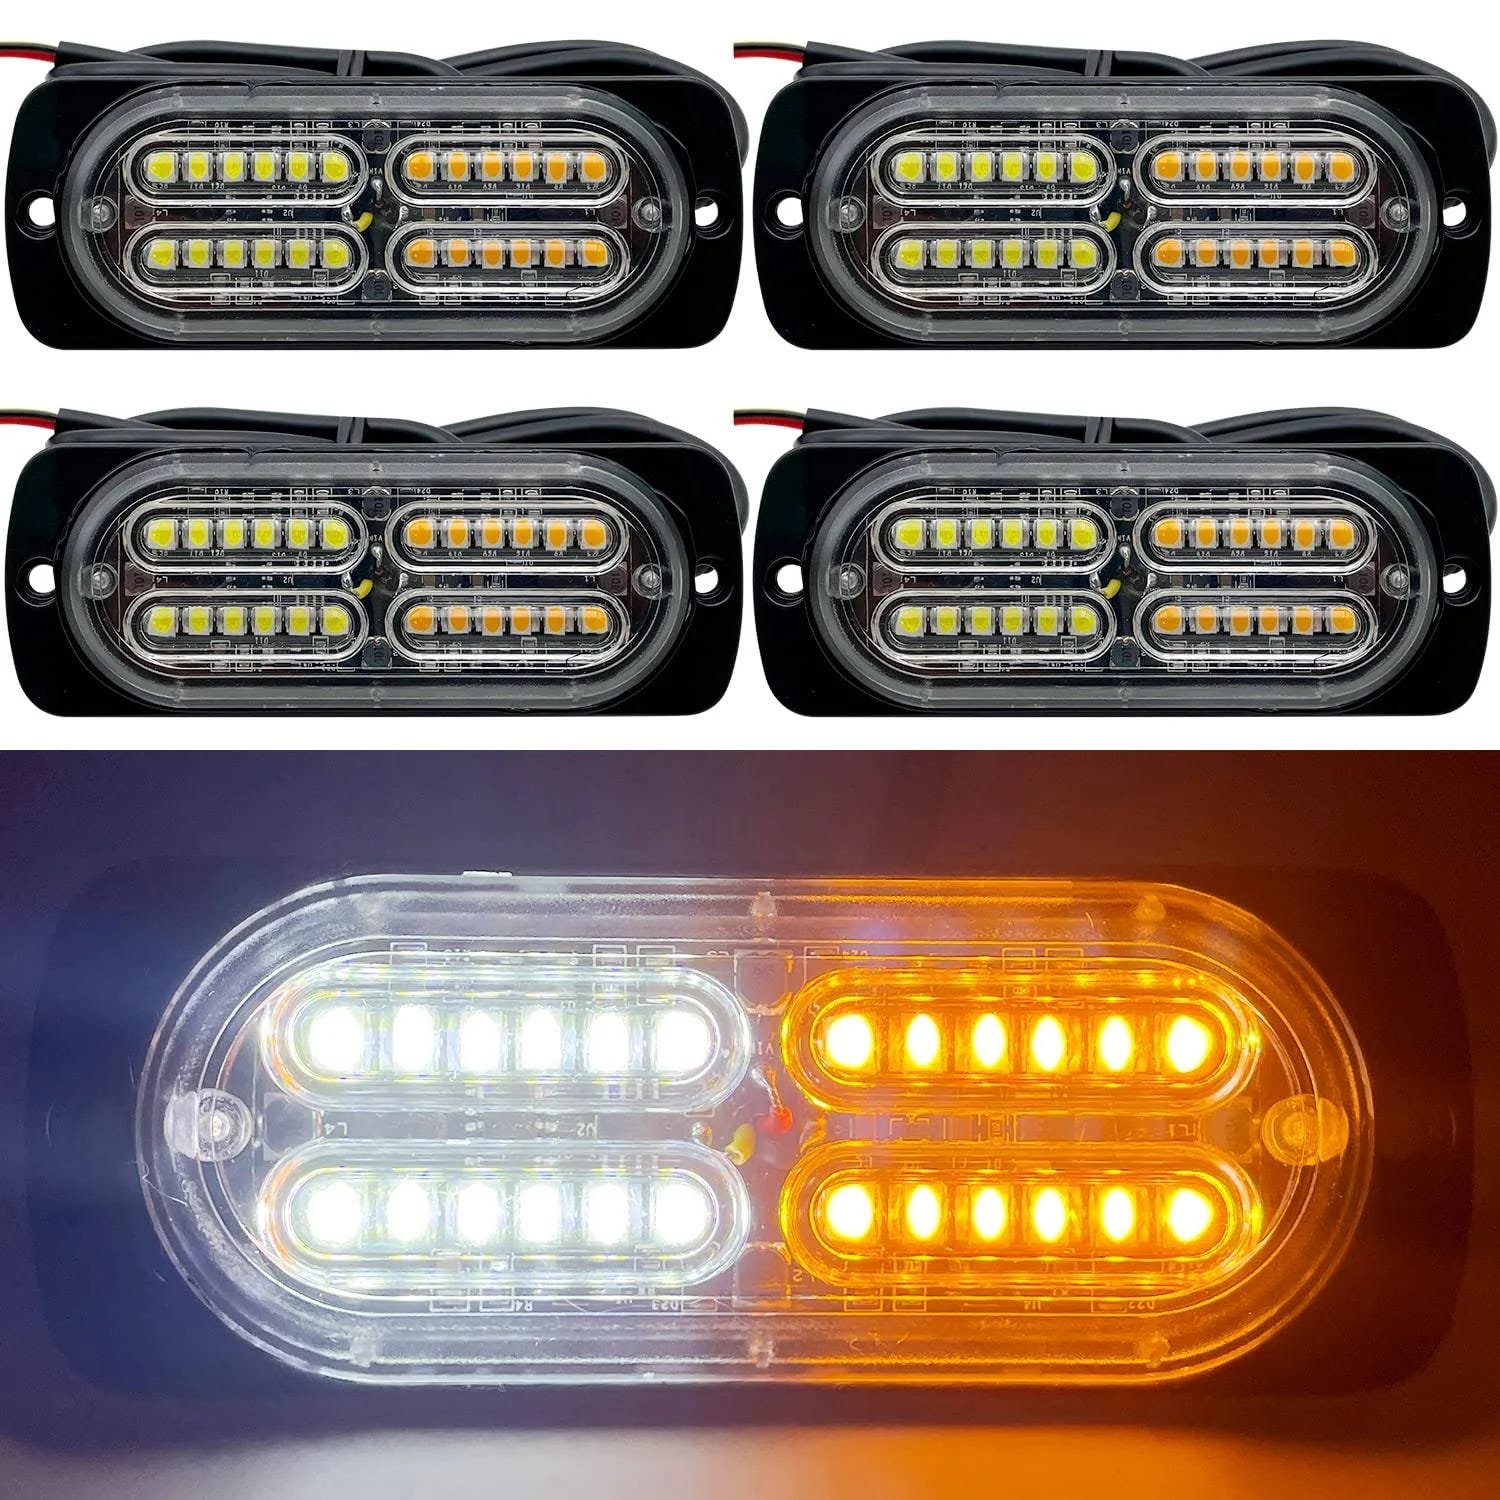 EASE2U LED Strobe Light for Emergency Vehicles | Image